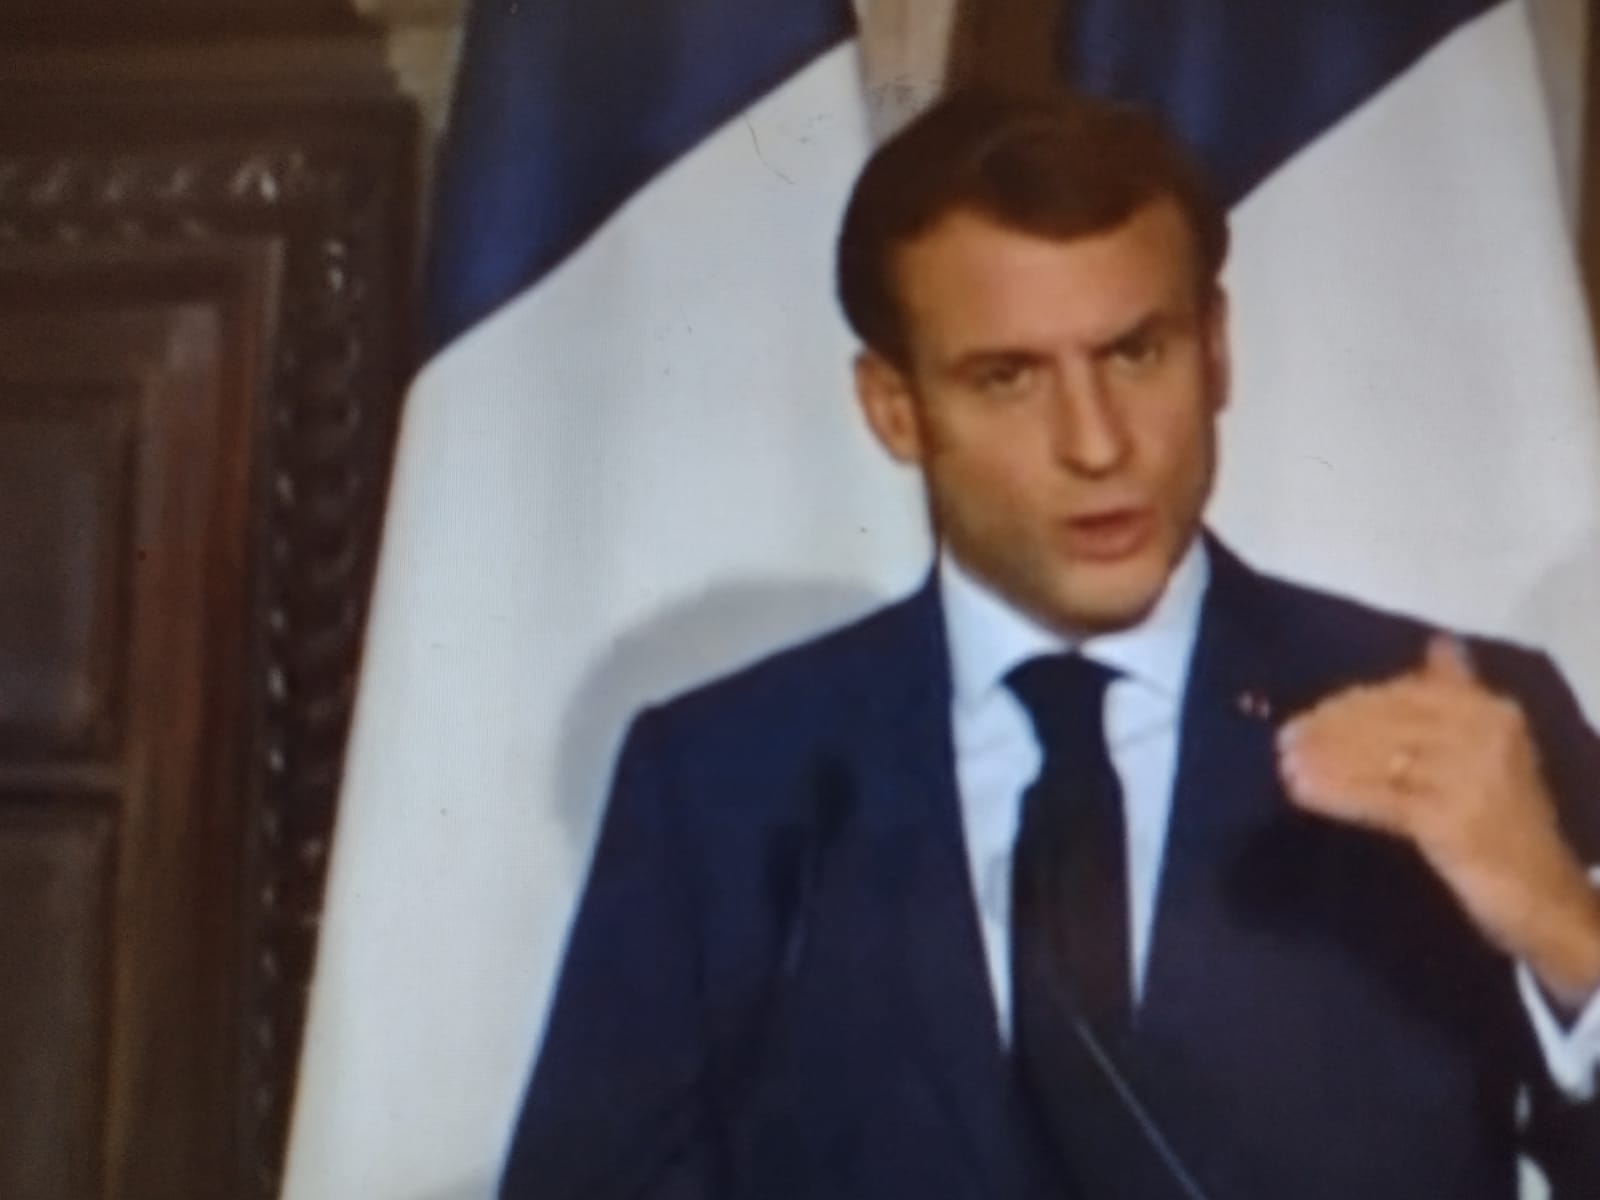 L'immagine mostra il presidente francese Emmanuel Macron durante un discorso. Il politico ha corti capelli bruni, indossa una giacca blu su camicia bianca e cravatta blu nera e sullo sfondo sono visibili il pezzo di una porta in legno e due bandiere francesi delle quali si vedono solo il bianco e il blu